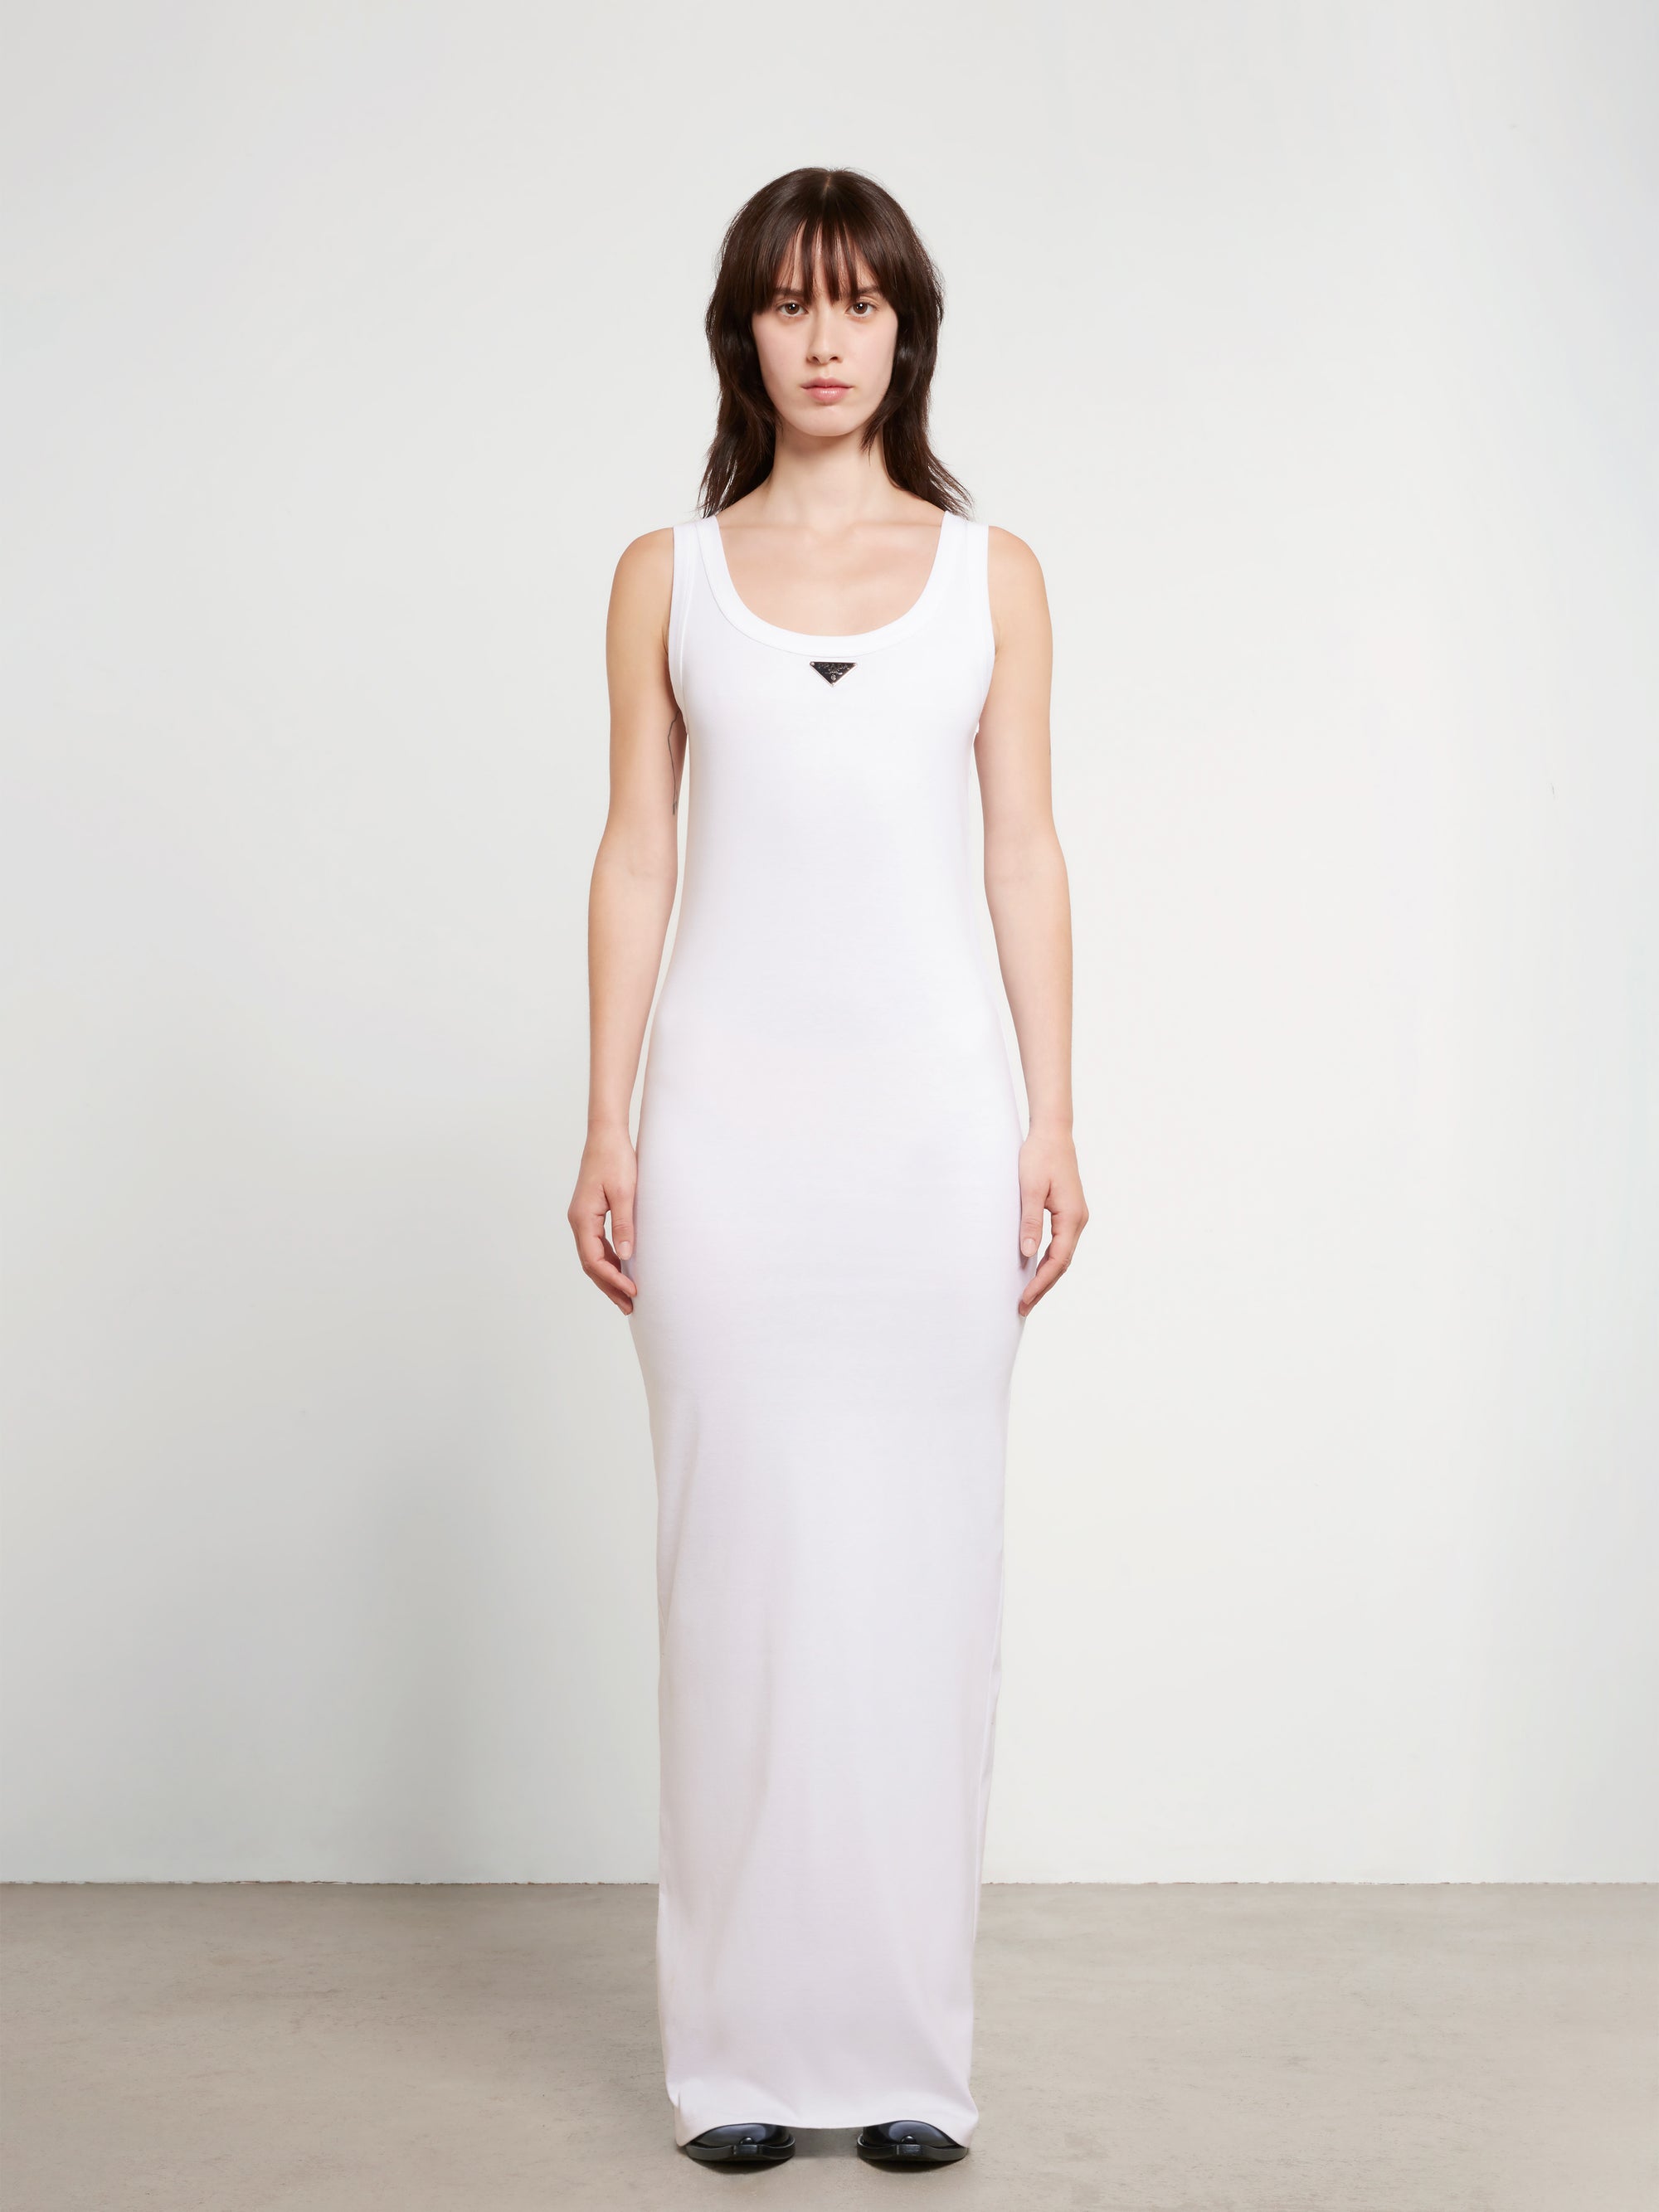 Prada - Women’s Cotton Jersey Dress - (White) view 1